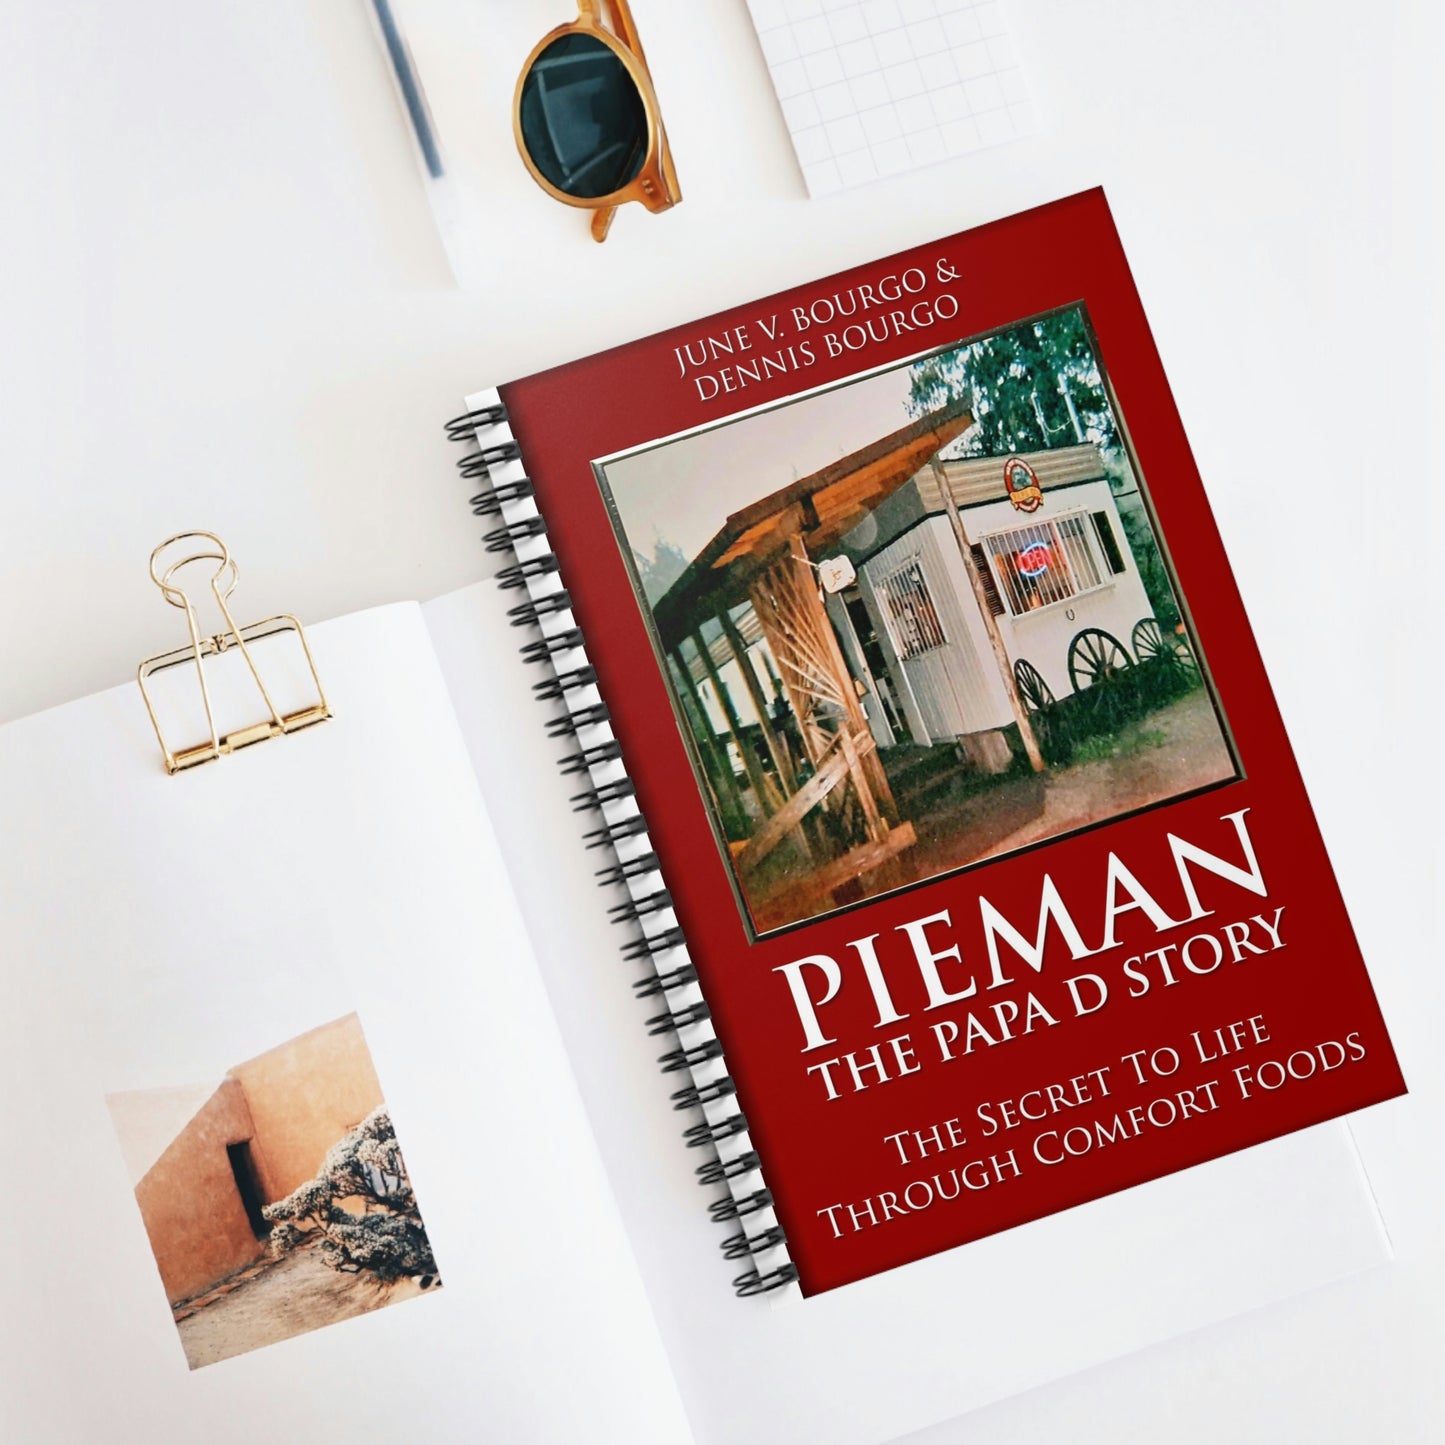 Pieman - The Papa D Story - Spiral Notebook